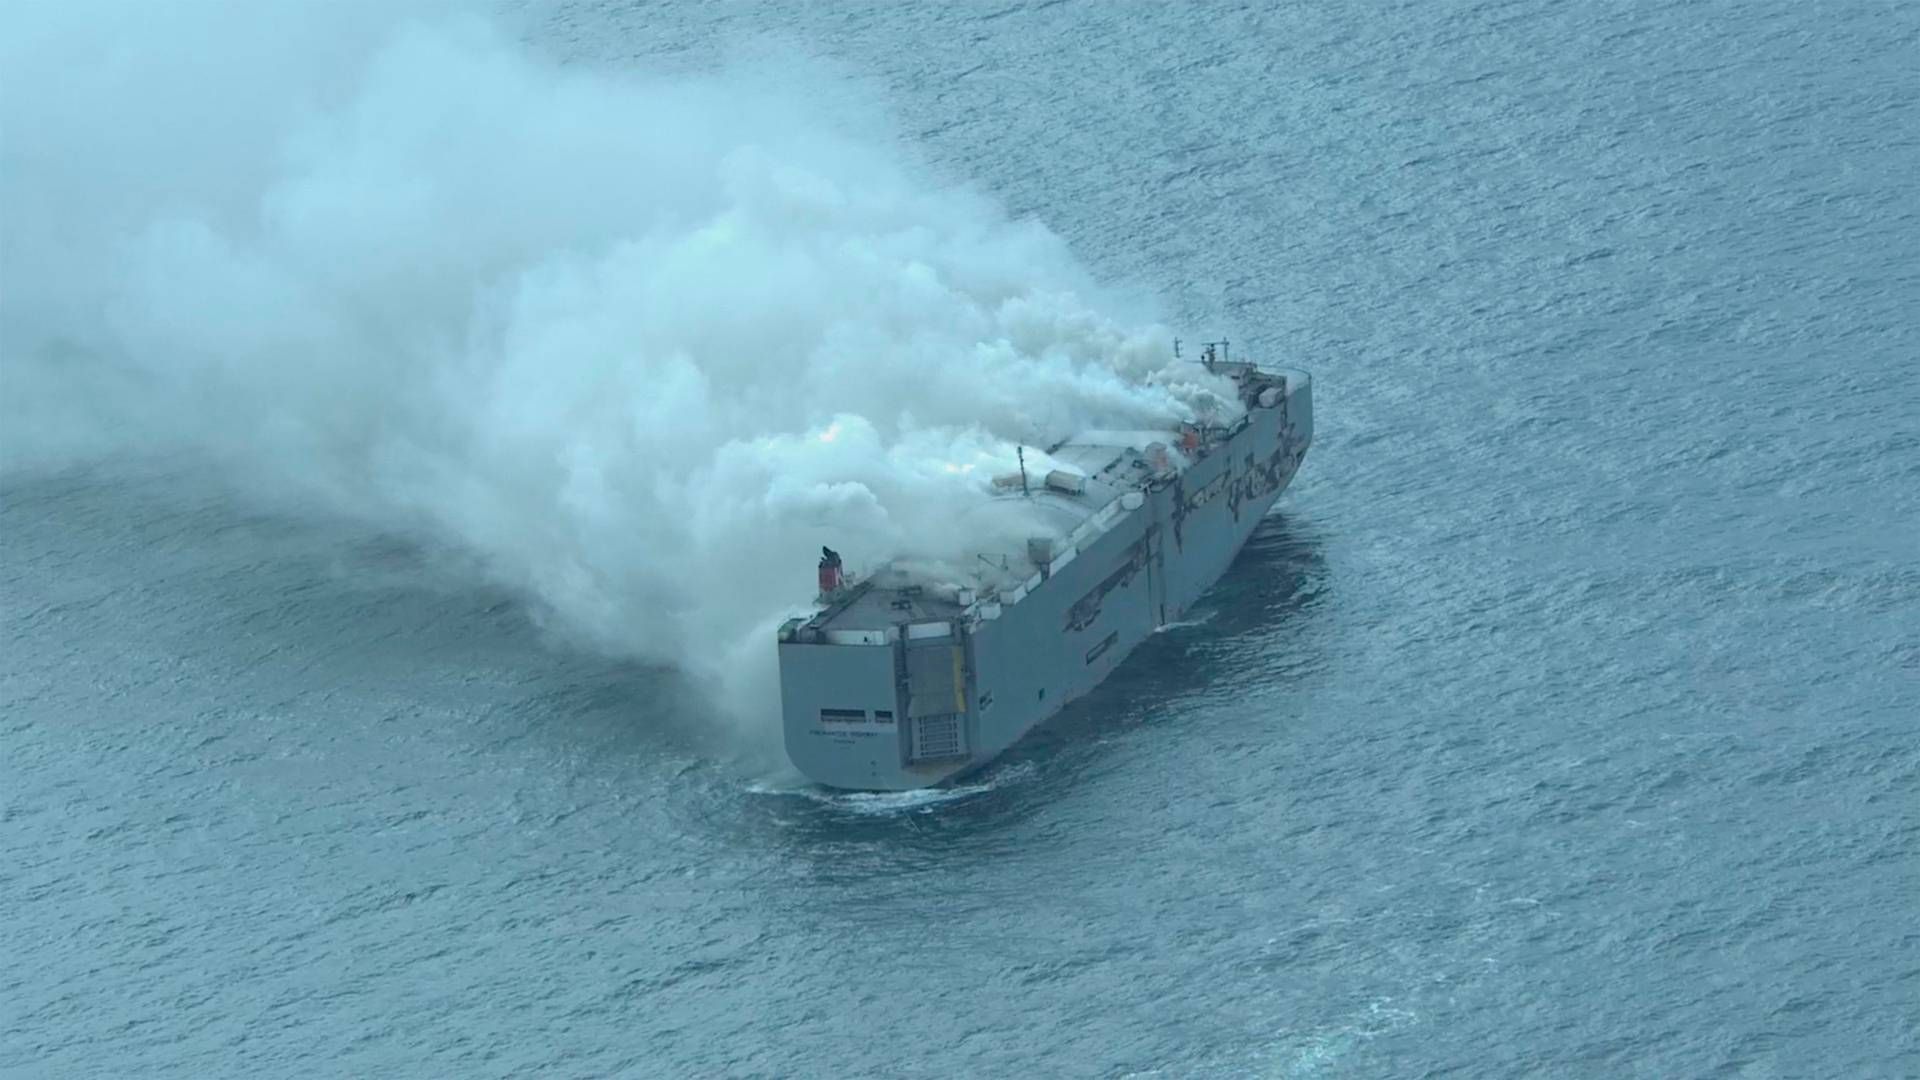 Skibet "Fremantle Highway" brød i brand tidligt onsdag morgen. Det er endnu ikke lykkedes at slukke branden. | Foto: Handout